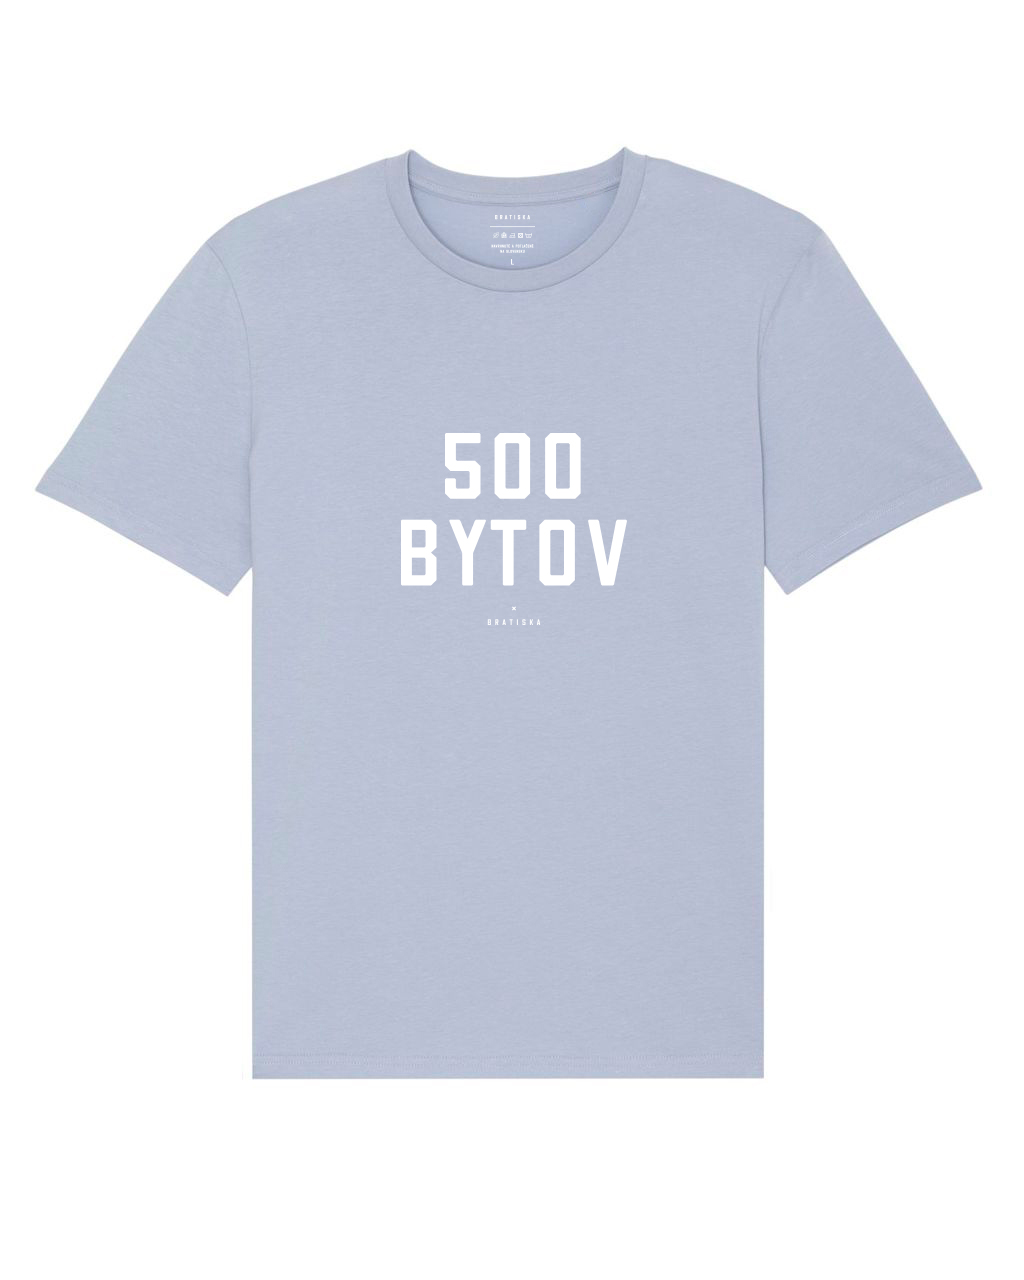 500 Bytov